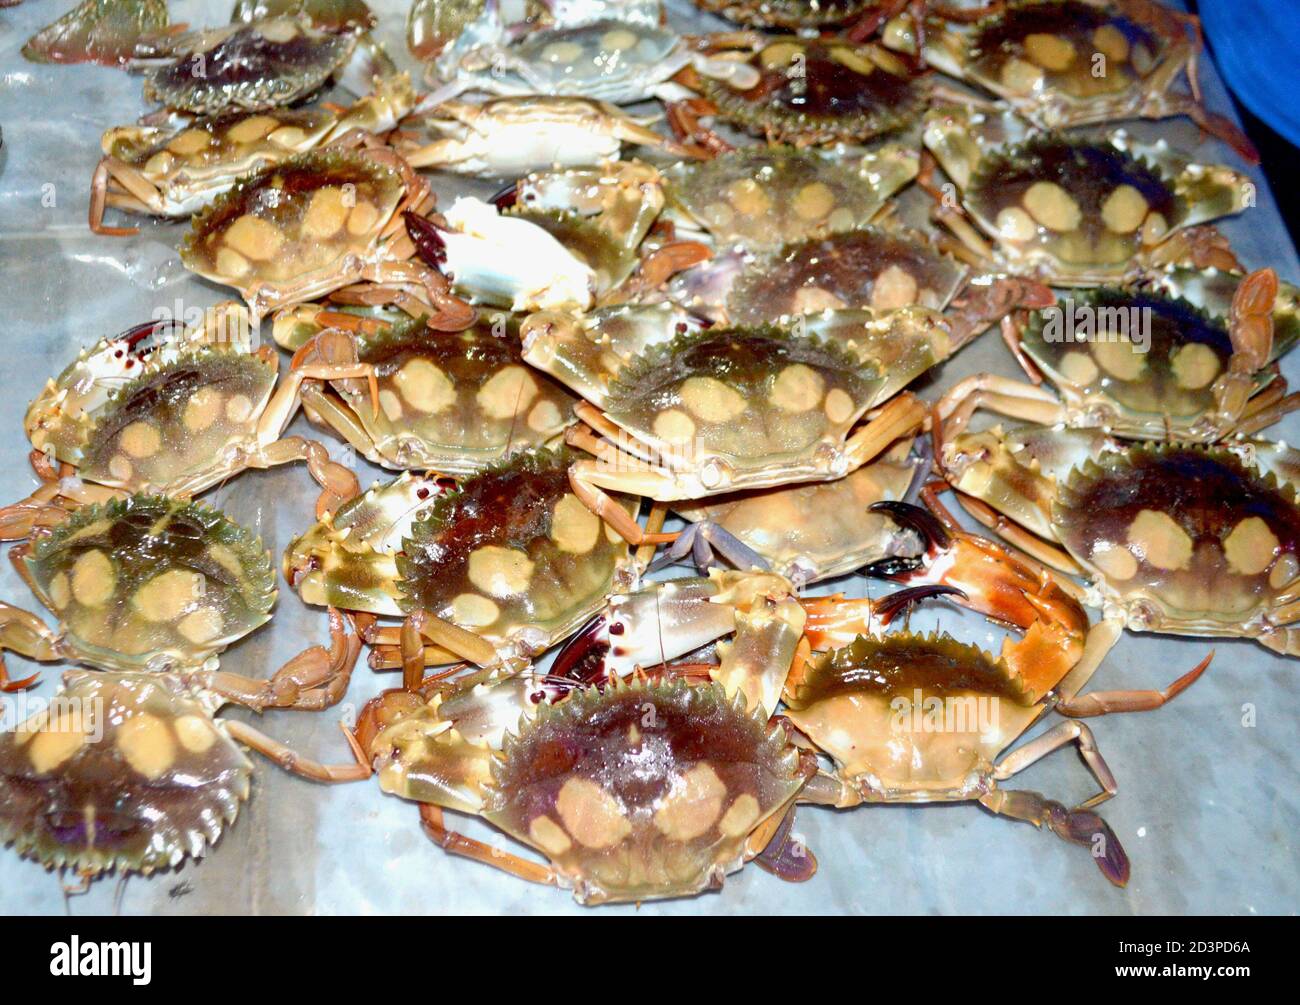 Poissons de fruits de mer frais traditionnels photographiés sur le marché aux poissons Banque D'Images